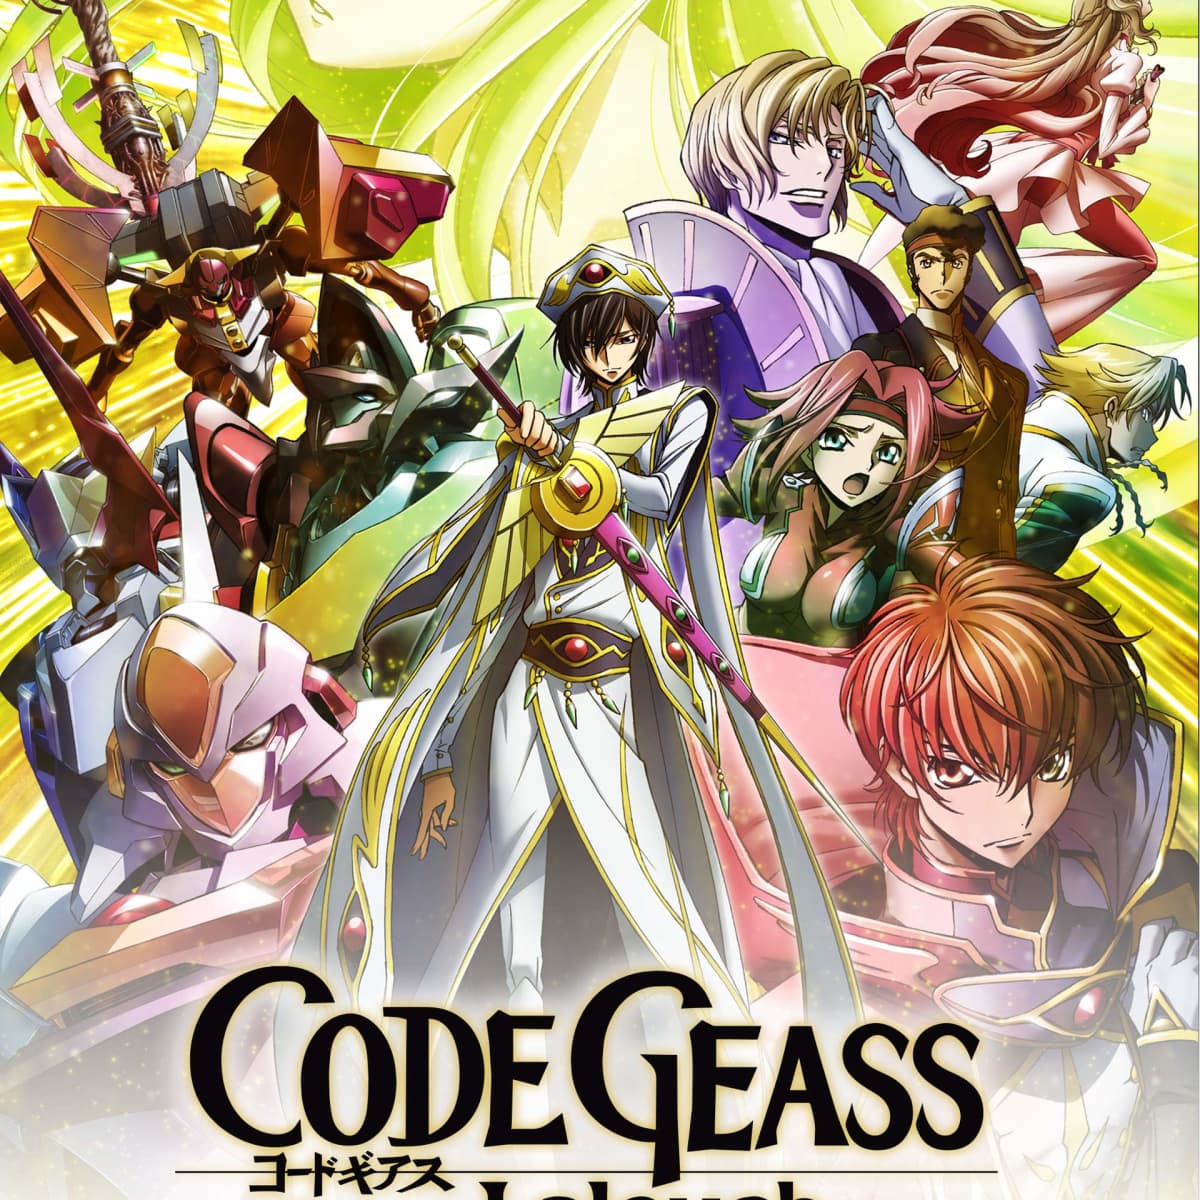 Review — Code Geass Hangyaku no Lelouch (Code Geass: Lelouch of